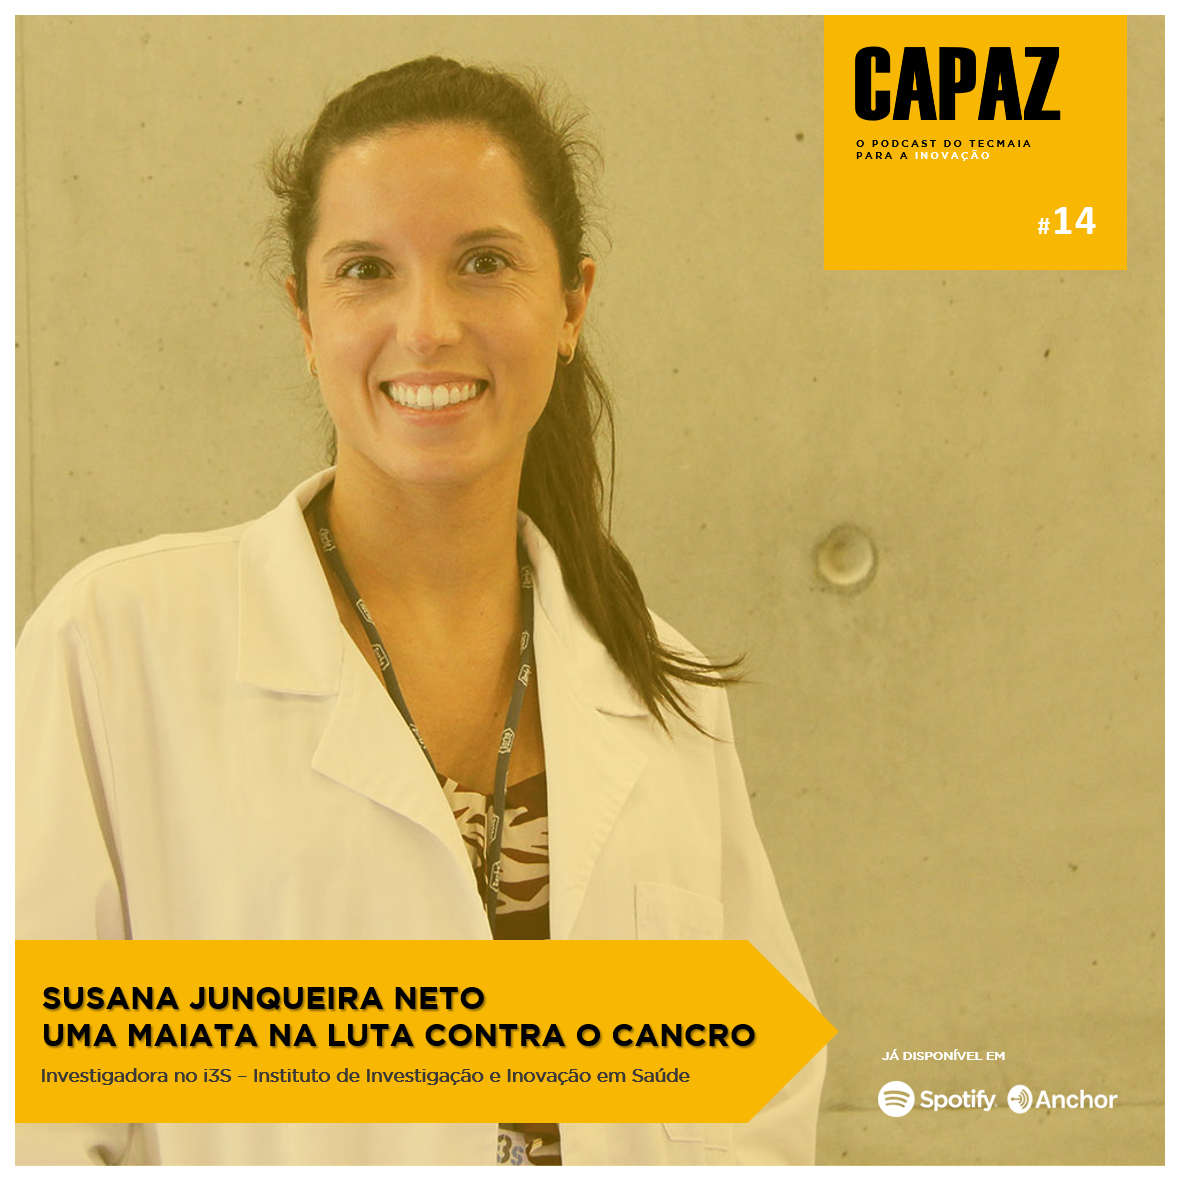 CAPAZ #14 - Susana Junqueira Neto, uma maiata na luta contra o cancro